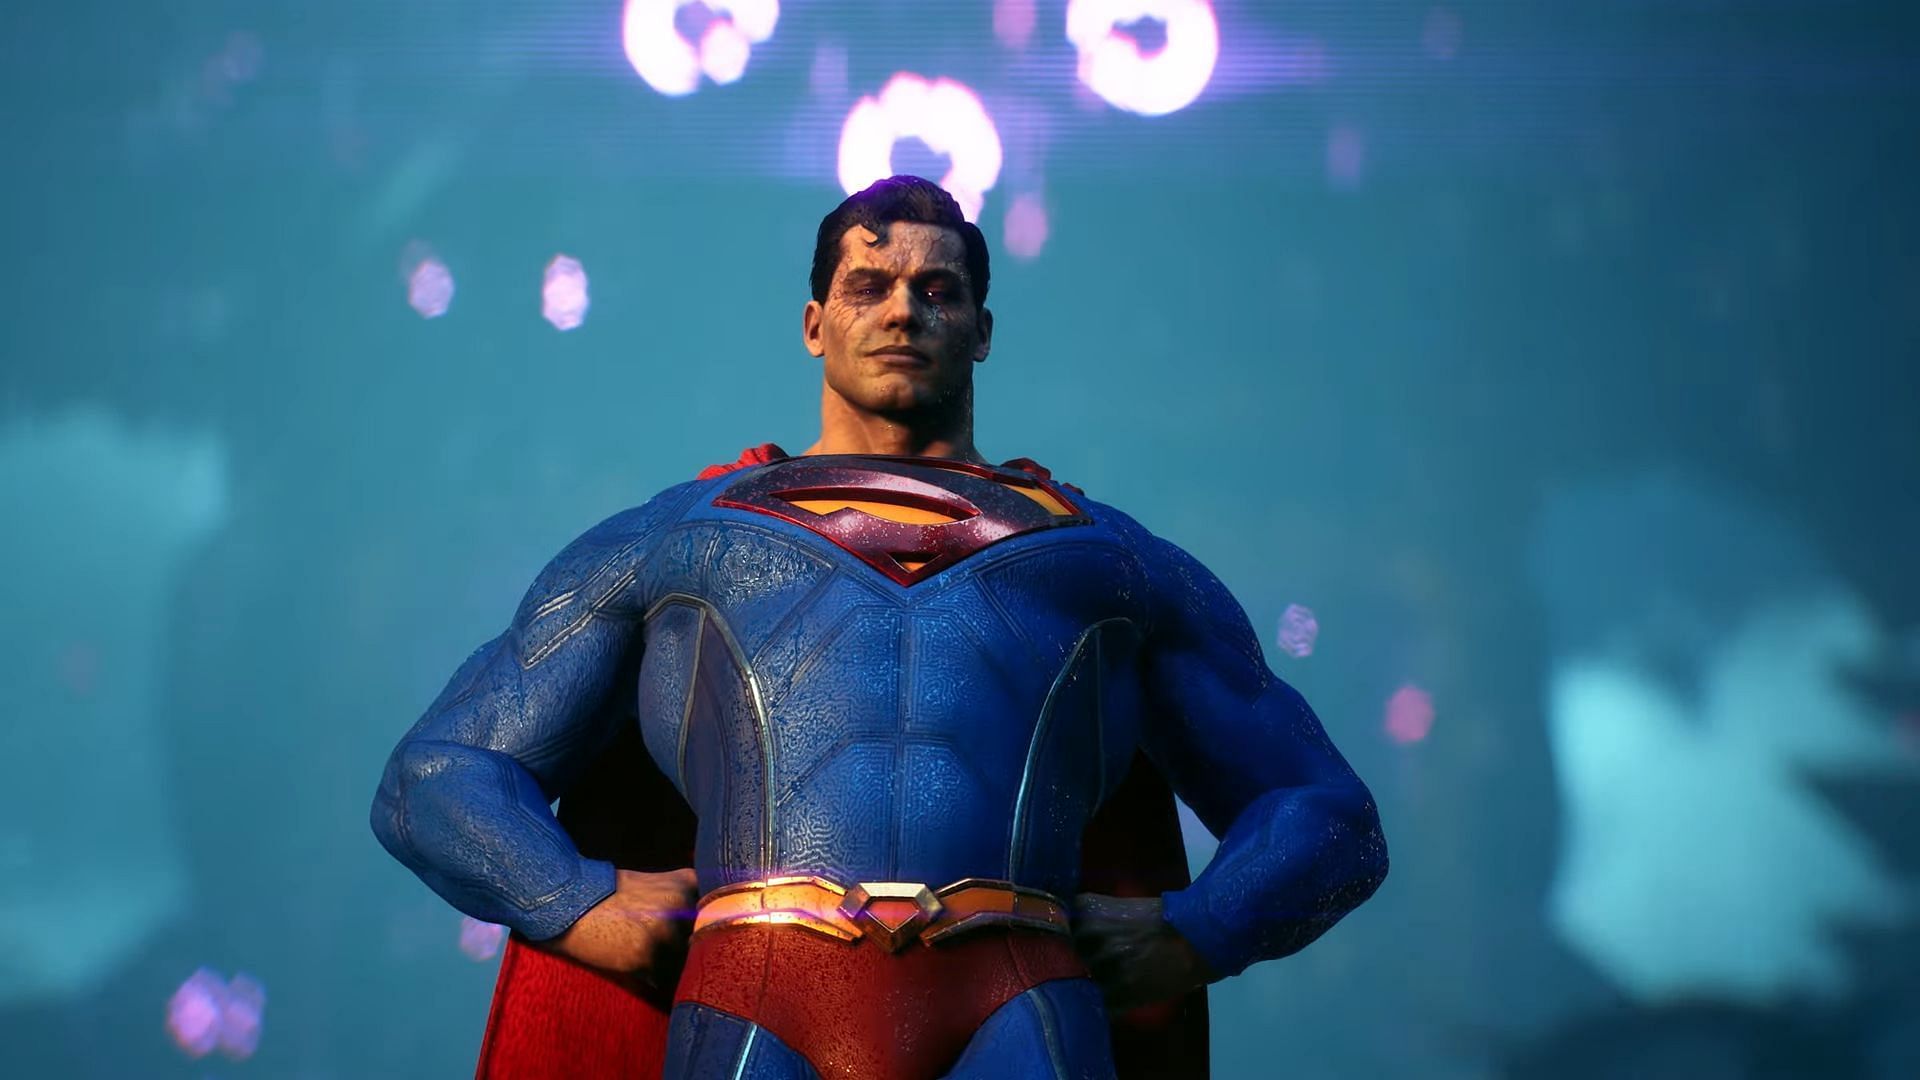 Superman is likely to return (Image via Warner Bros. Games)